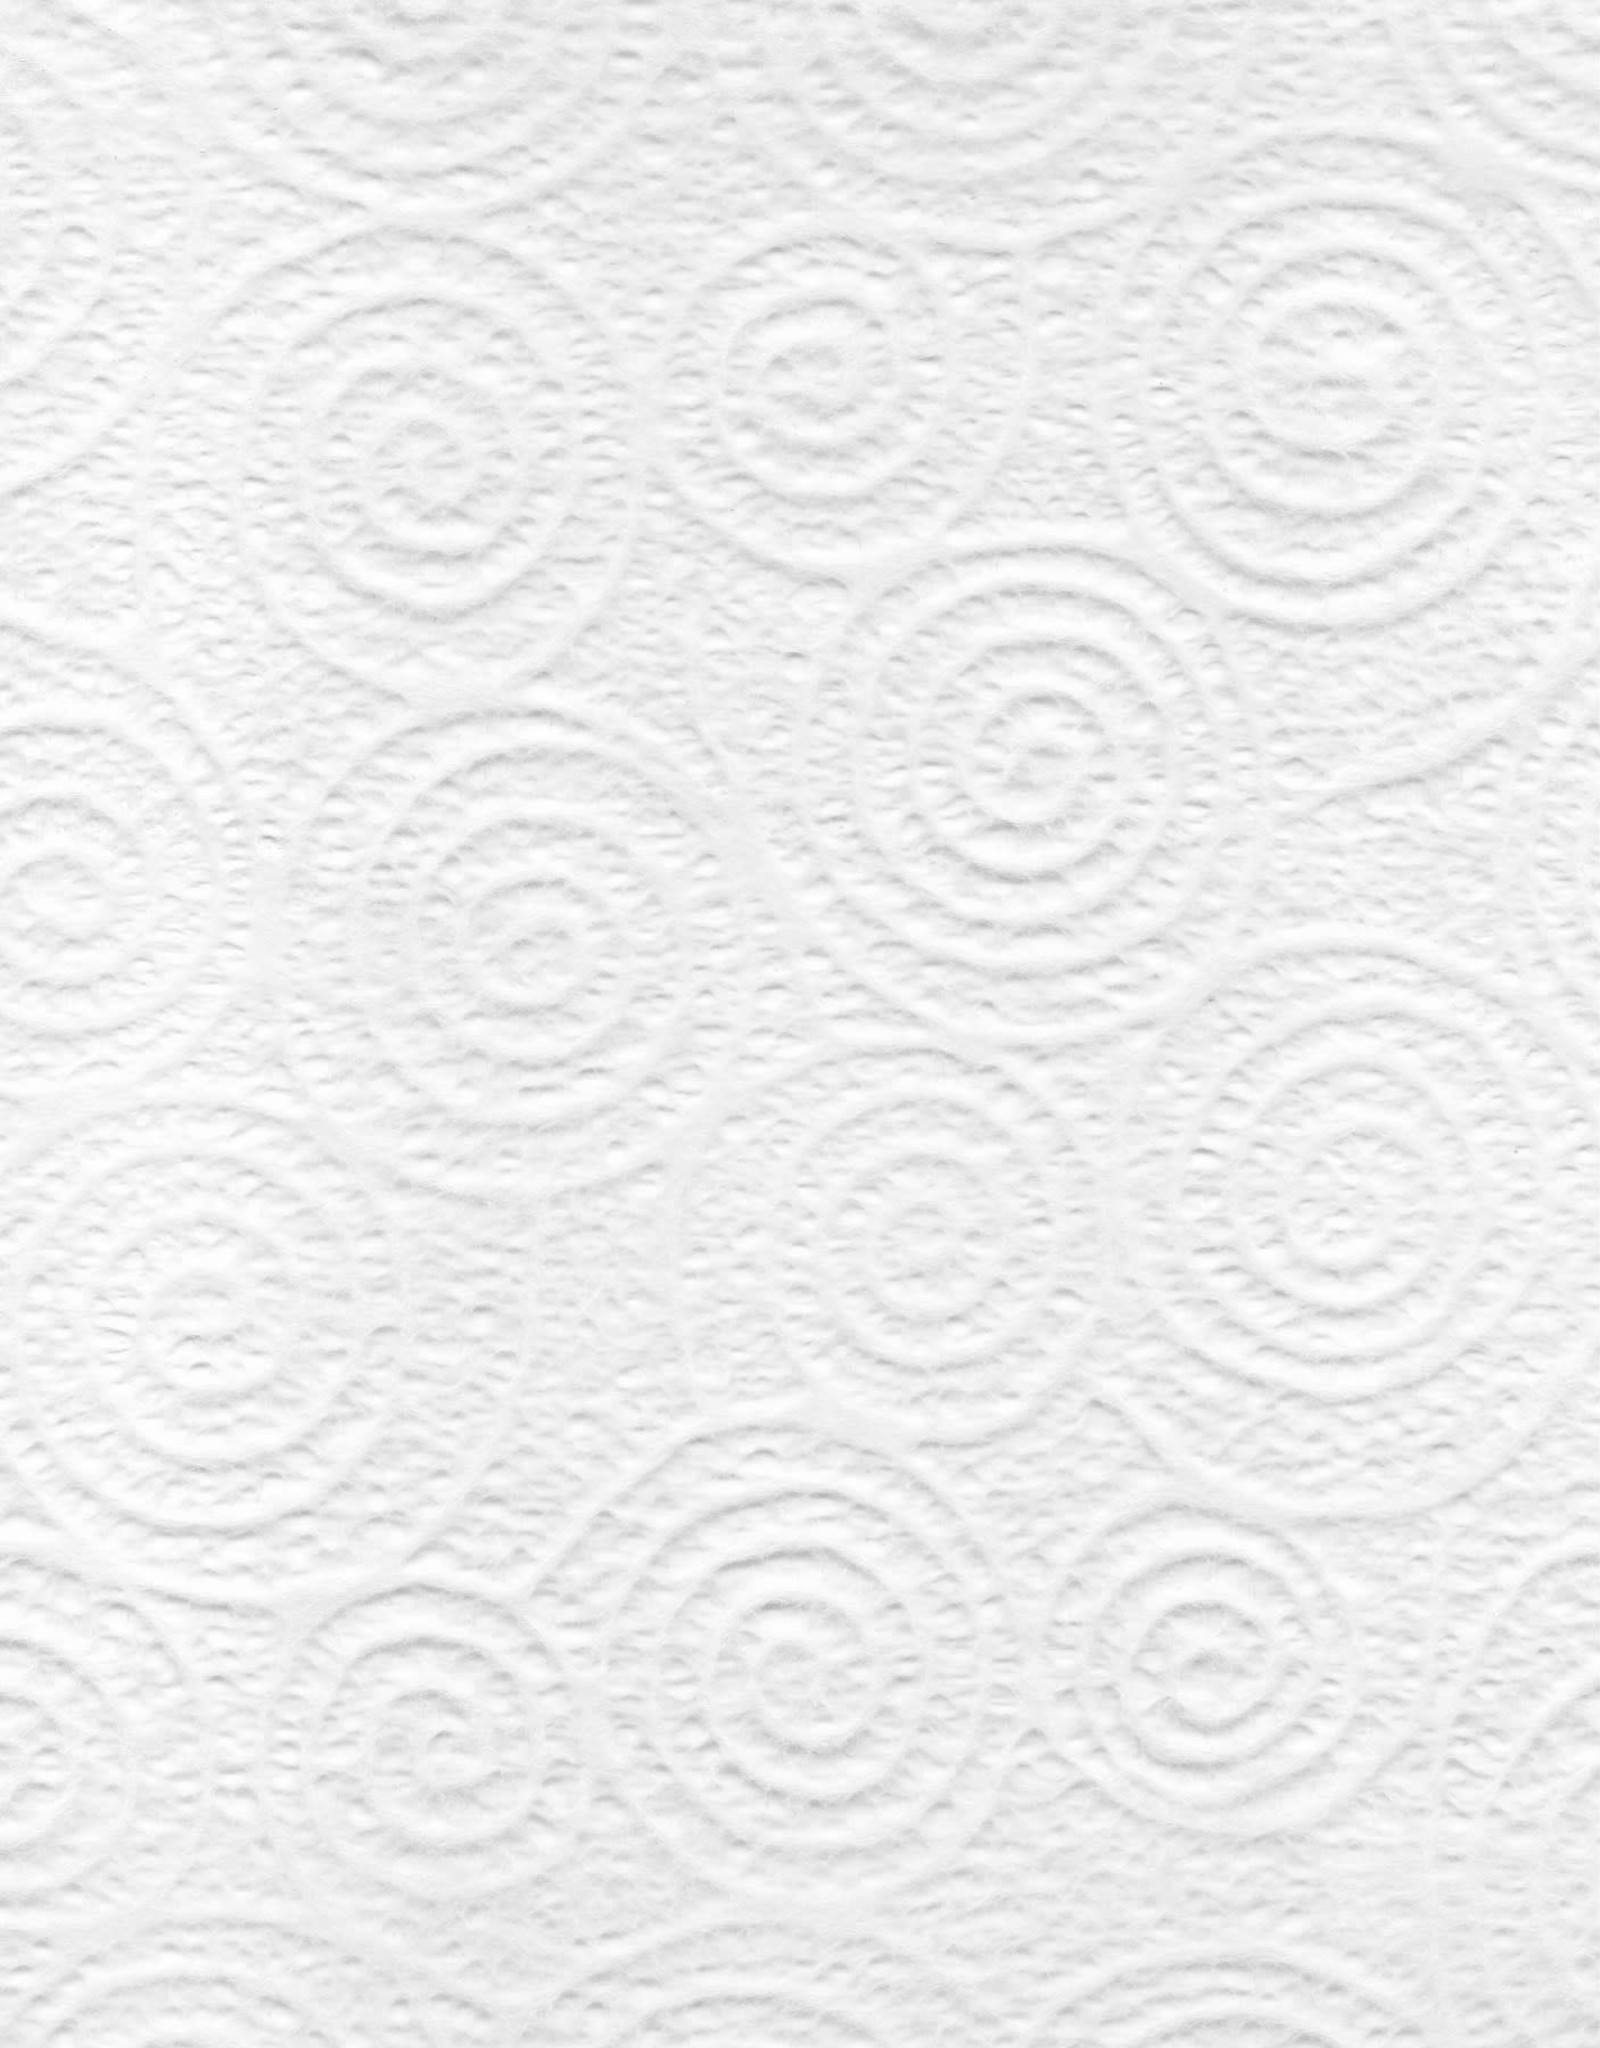 Japanese Uzumaki Lace White, 21" x 31"